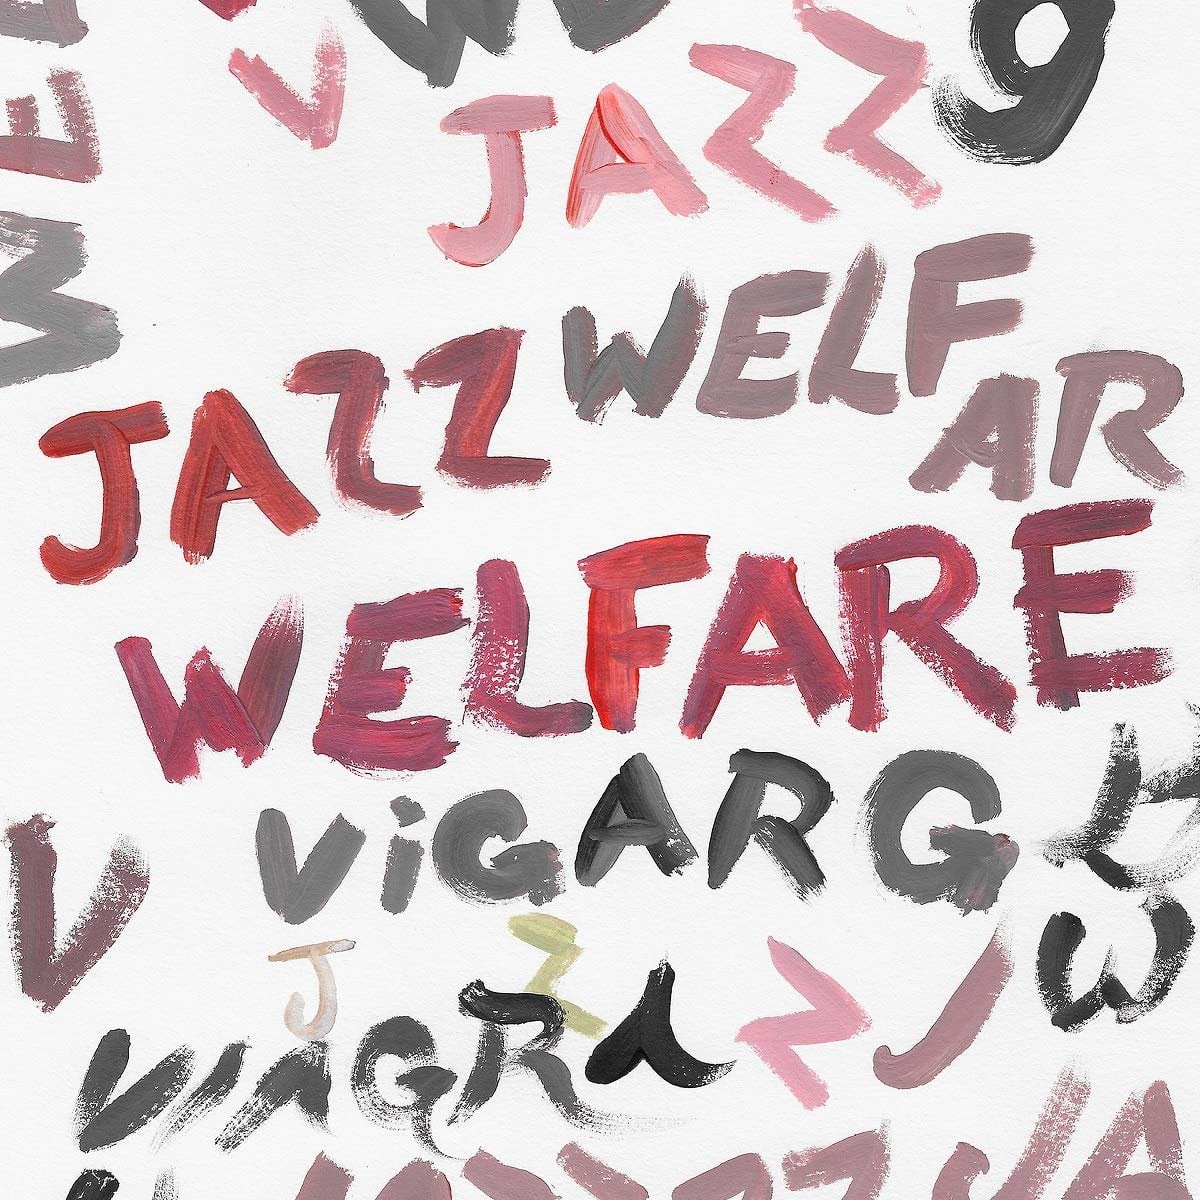 Viagra Boys - Welfare Jazz recenzja sztukmix